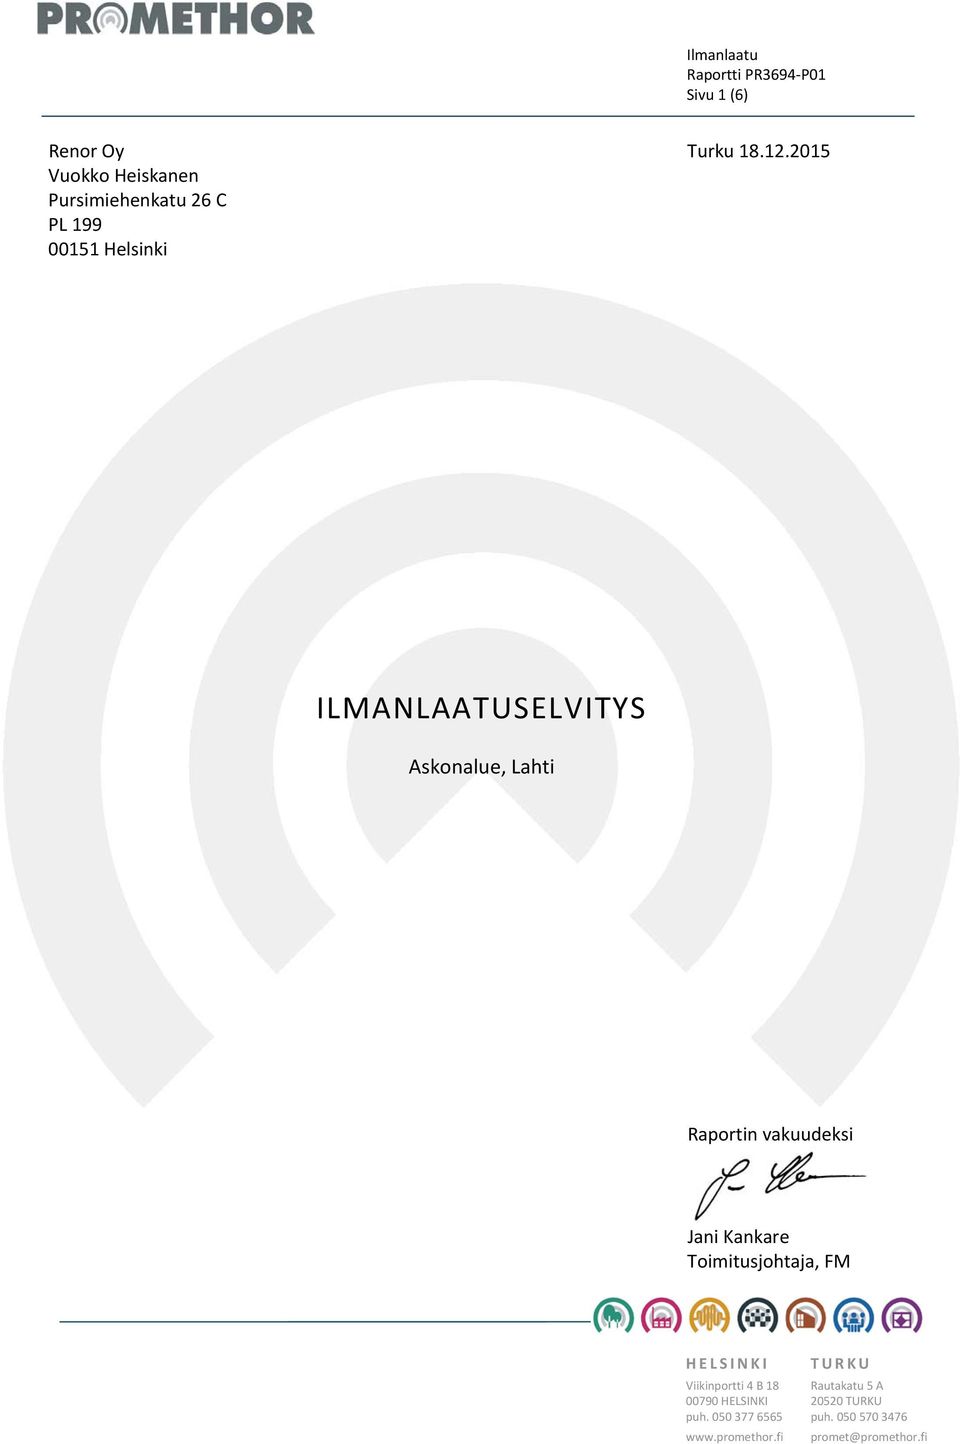 2015 ILMANLAATUSELVITYS Raportin vakuudeksi Jani Kankare Toimitusjohtaja, FM HELSINKI